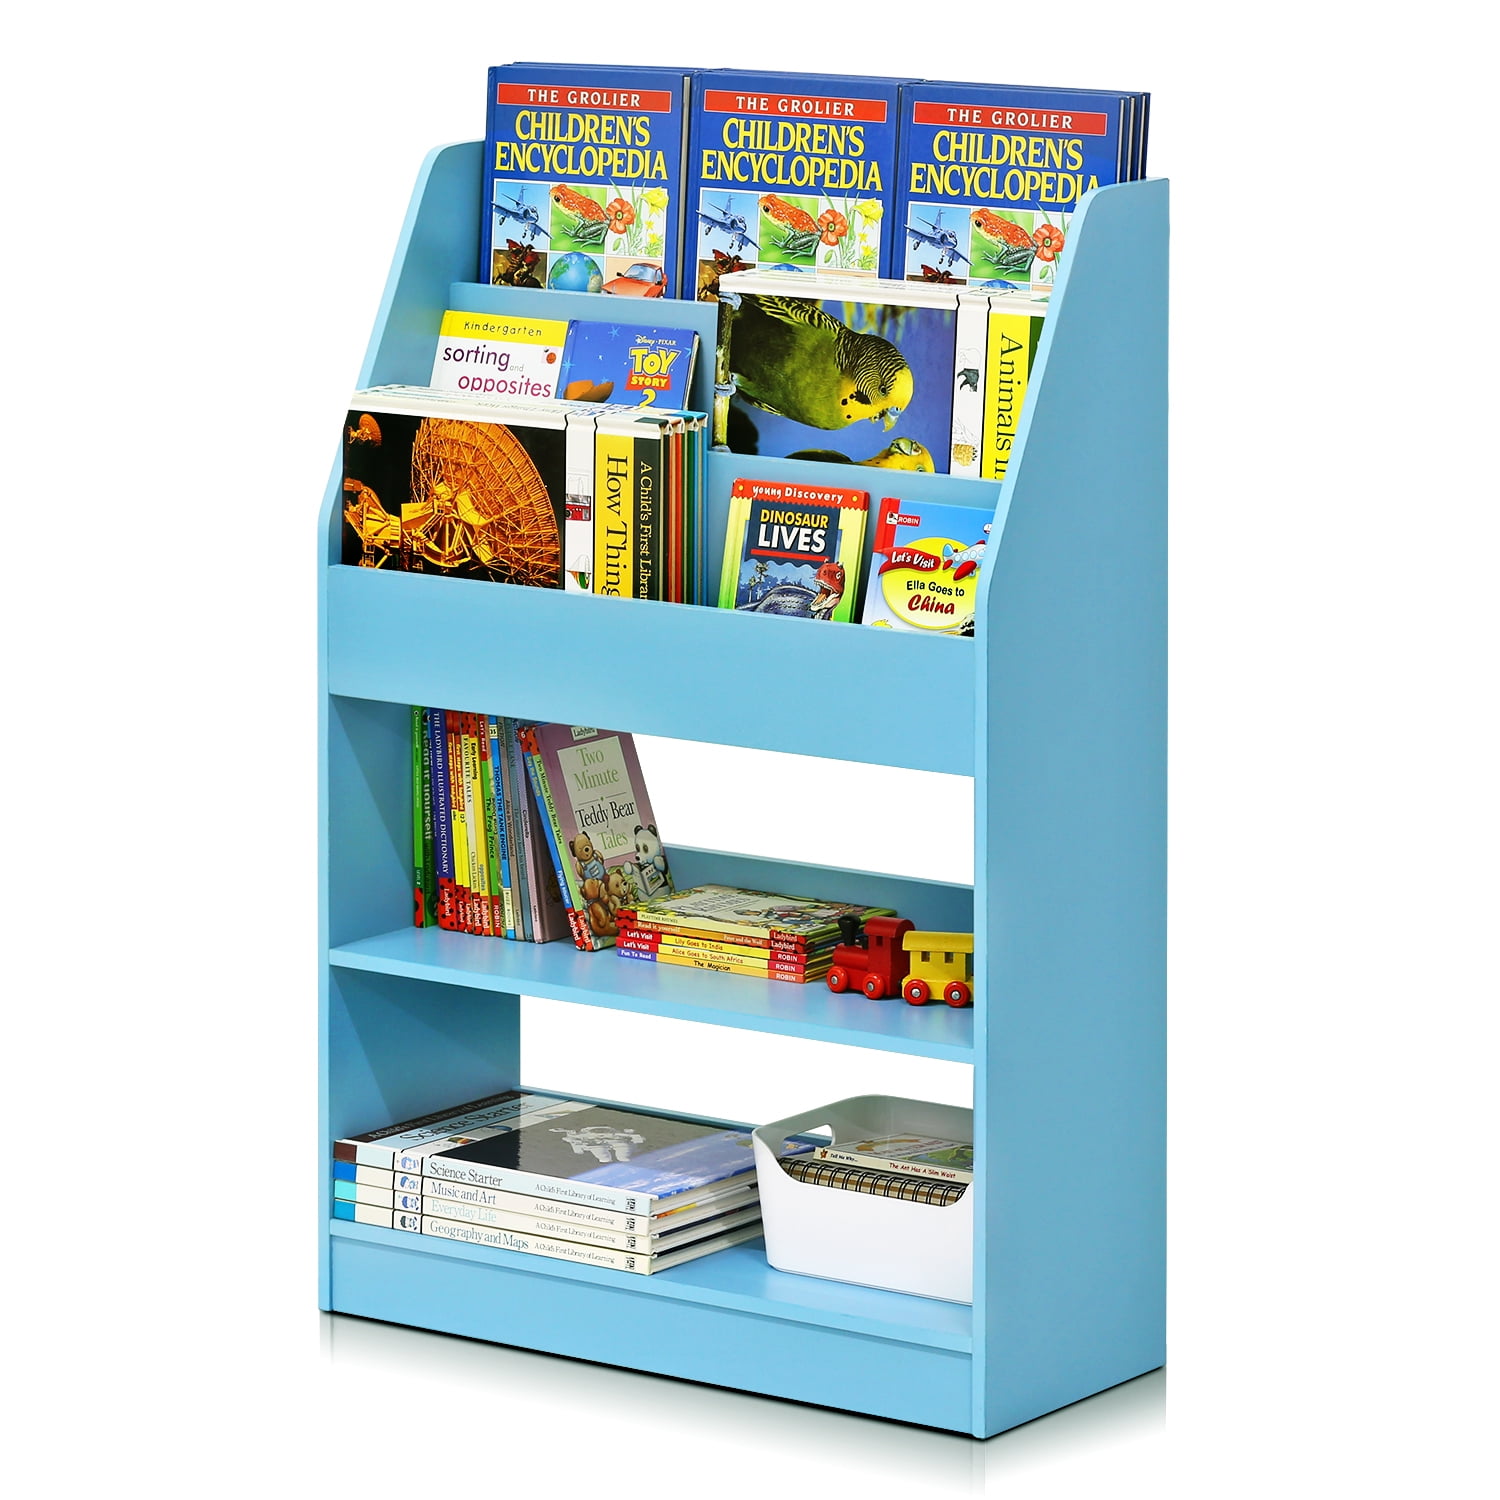 shelves for kids